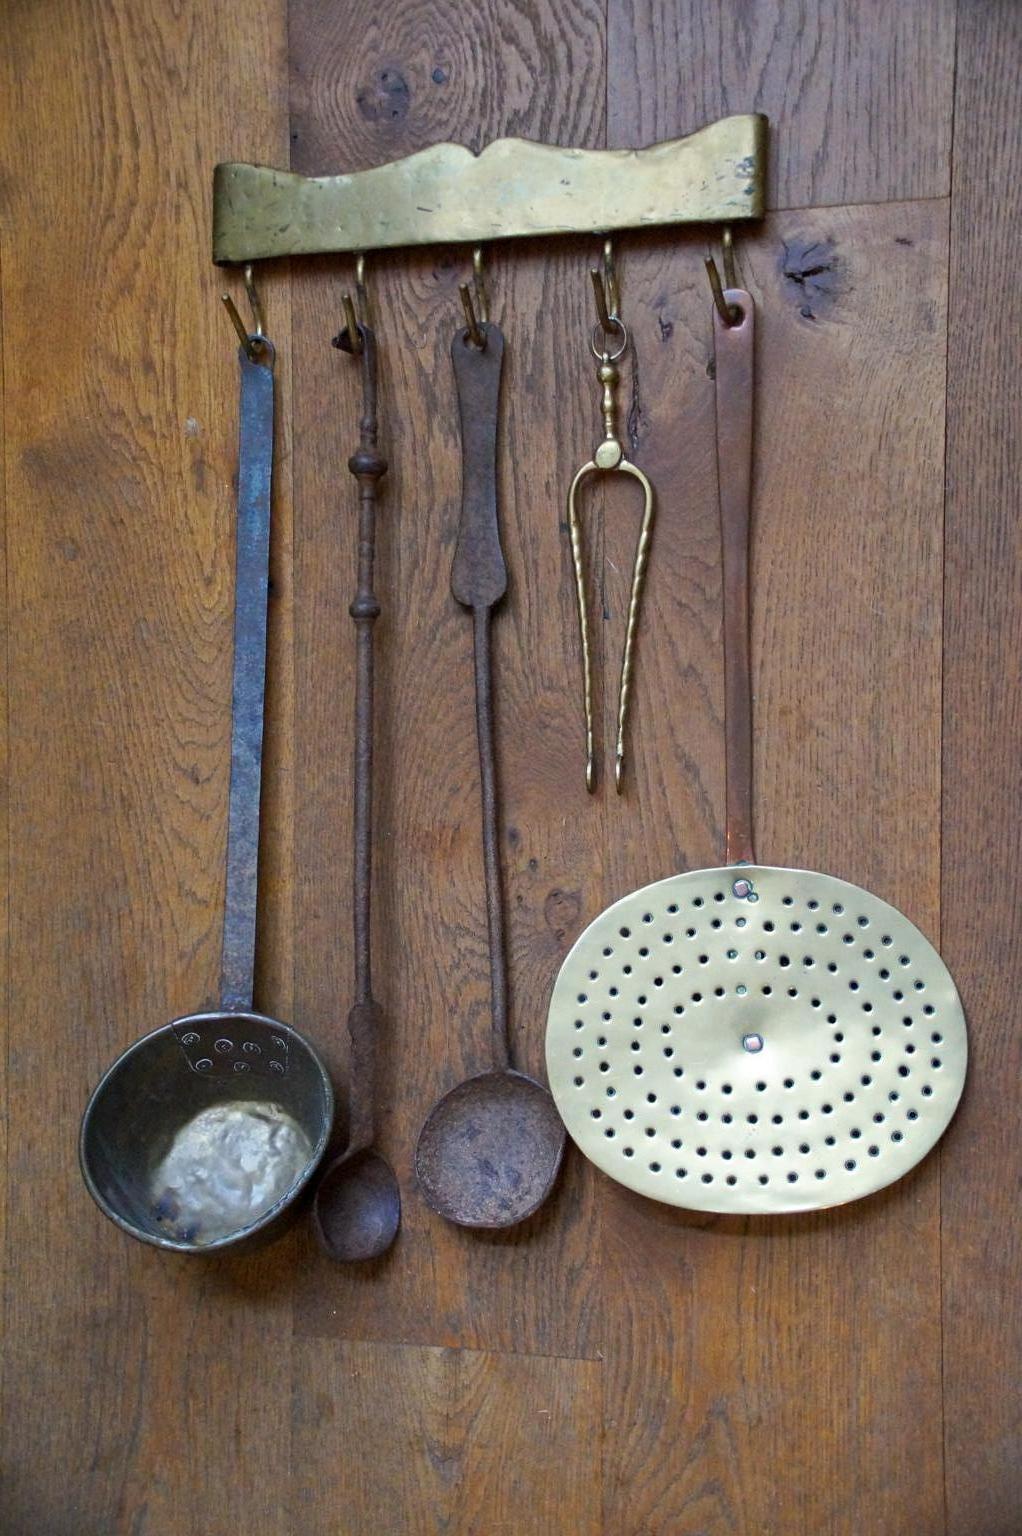 18th century kitchen tools